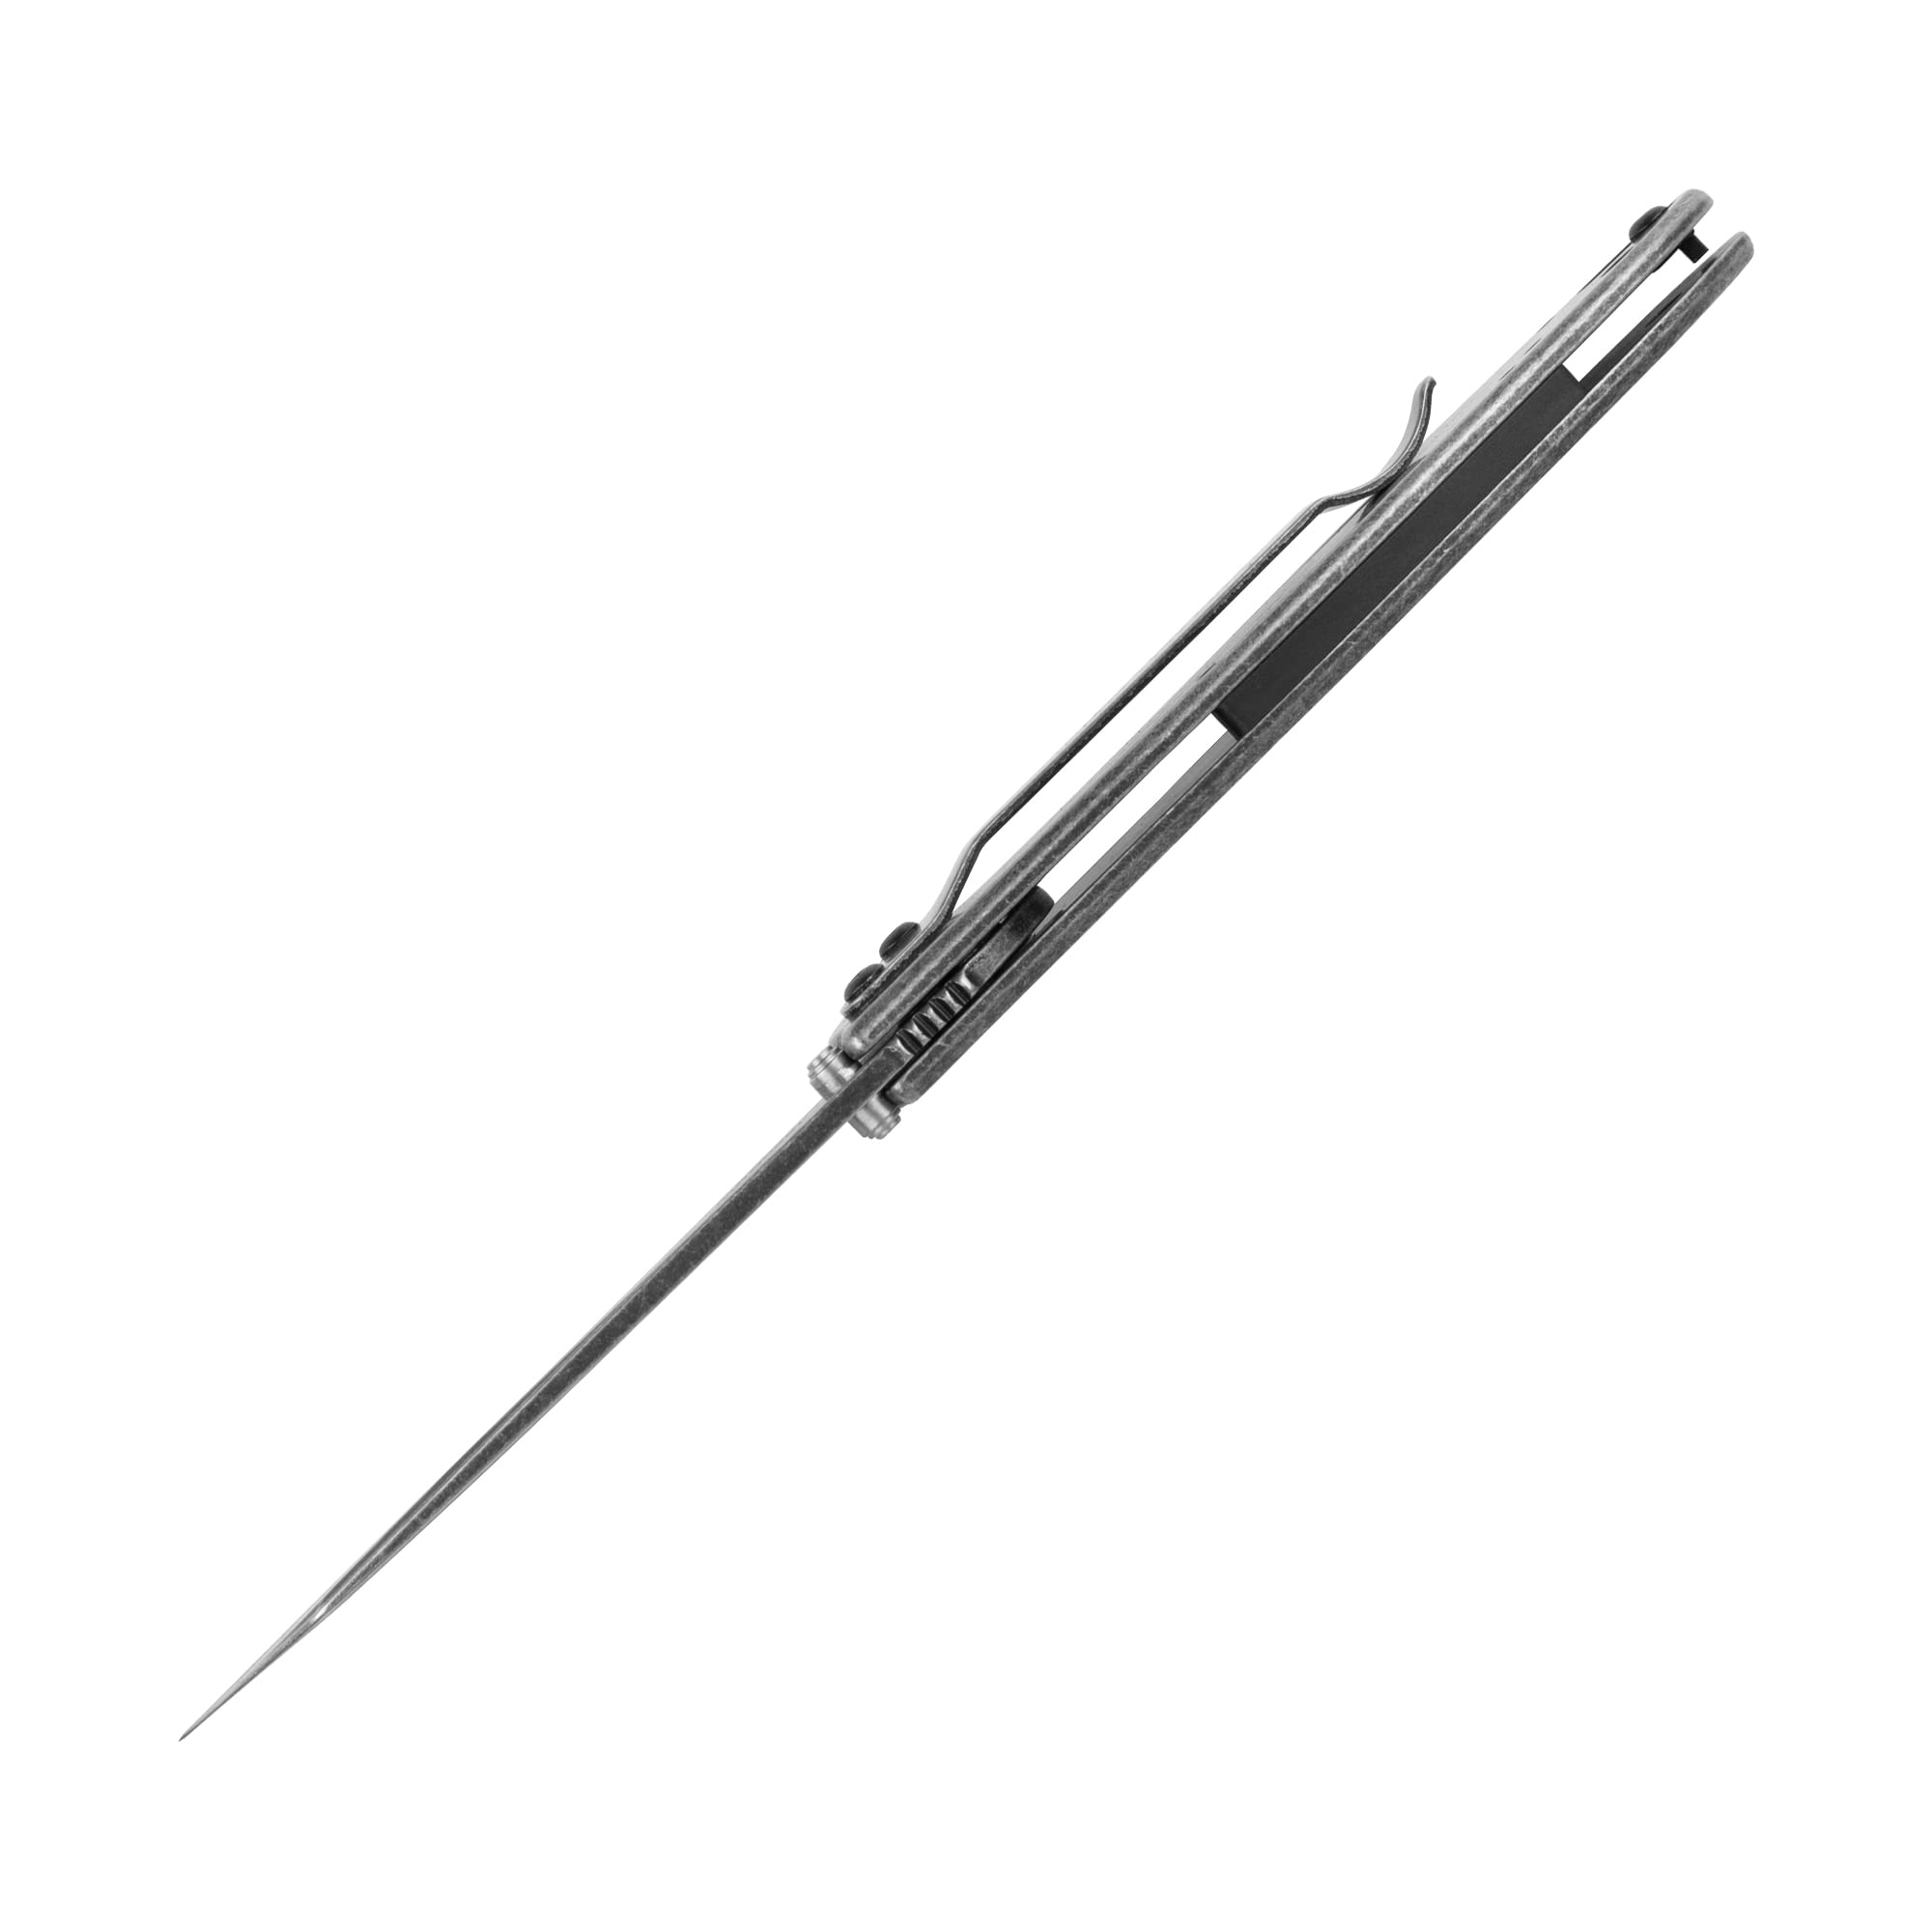 Kershaw Random Leek, Blackwash, 3 inch Sandvik 14C28N Stainless Steel Blade, SpeedSafe Opening, Reverse Tanto, 1660RBW